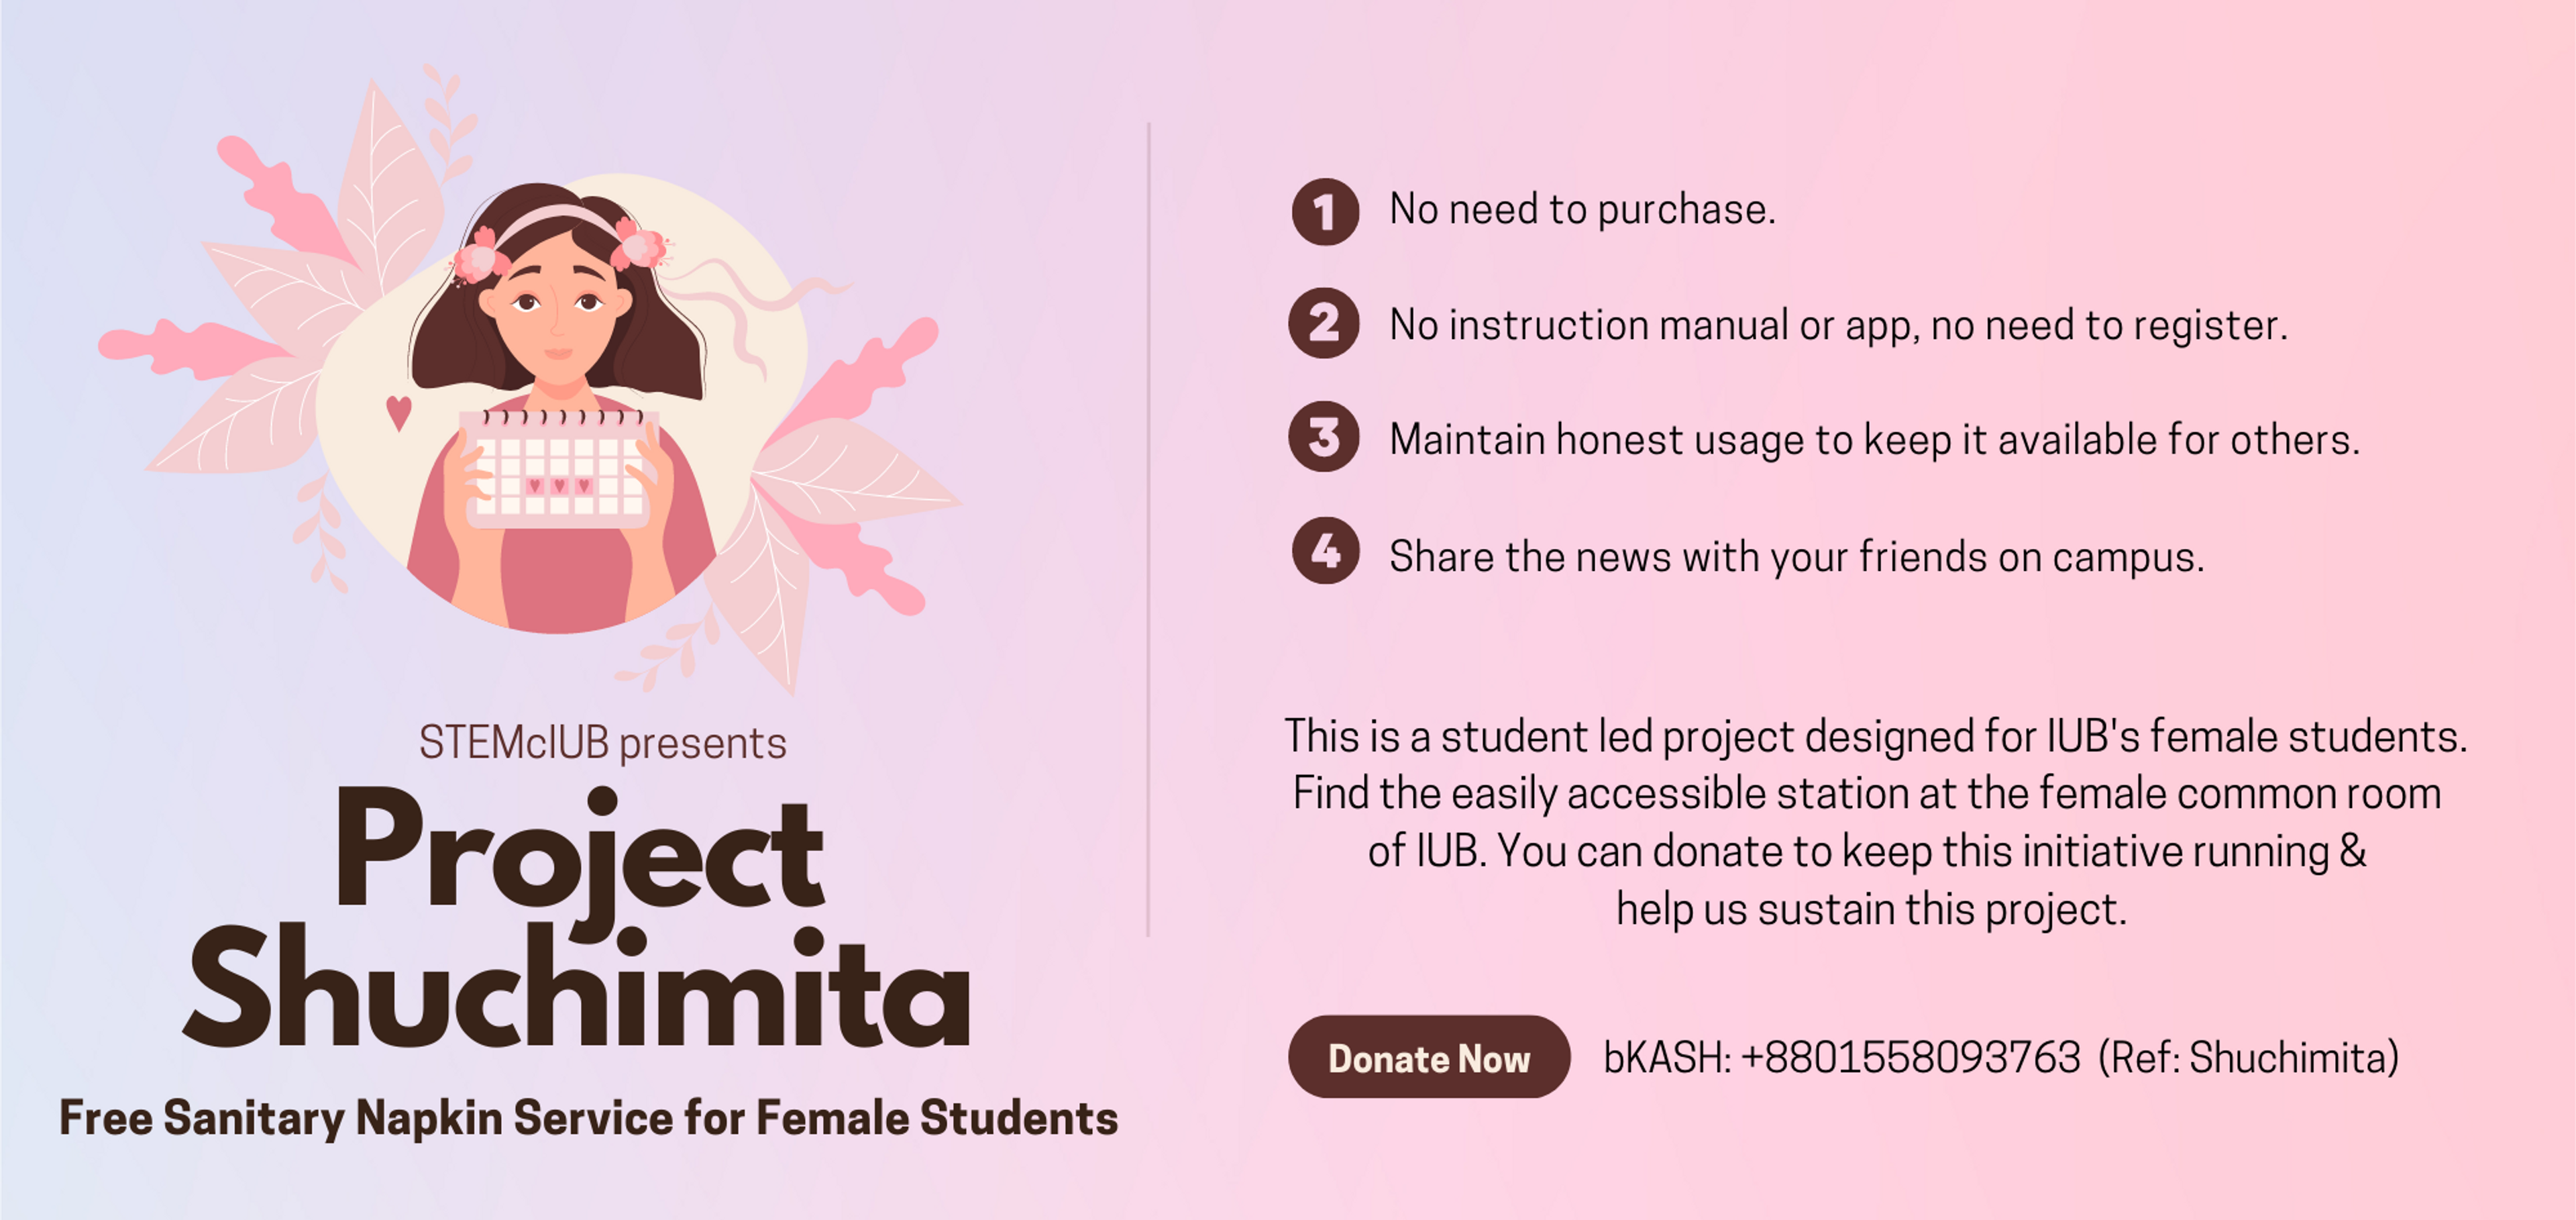 Project Shuchimita: Free Sanitary Napkin Service